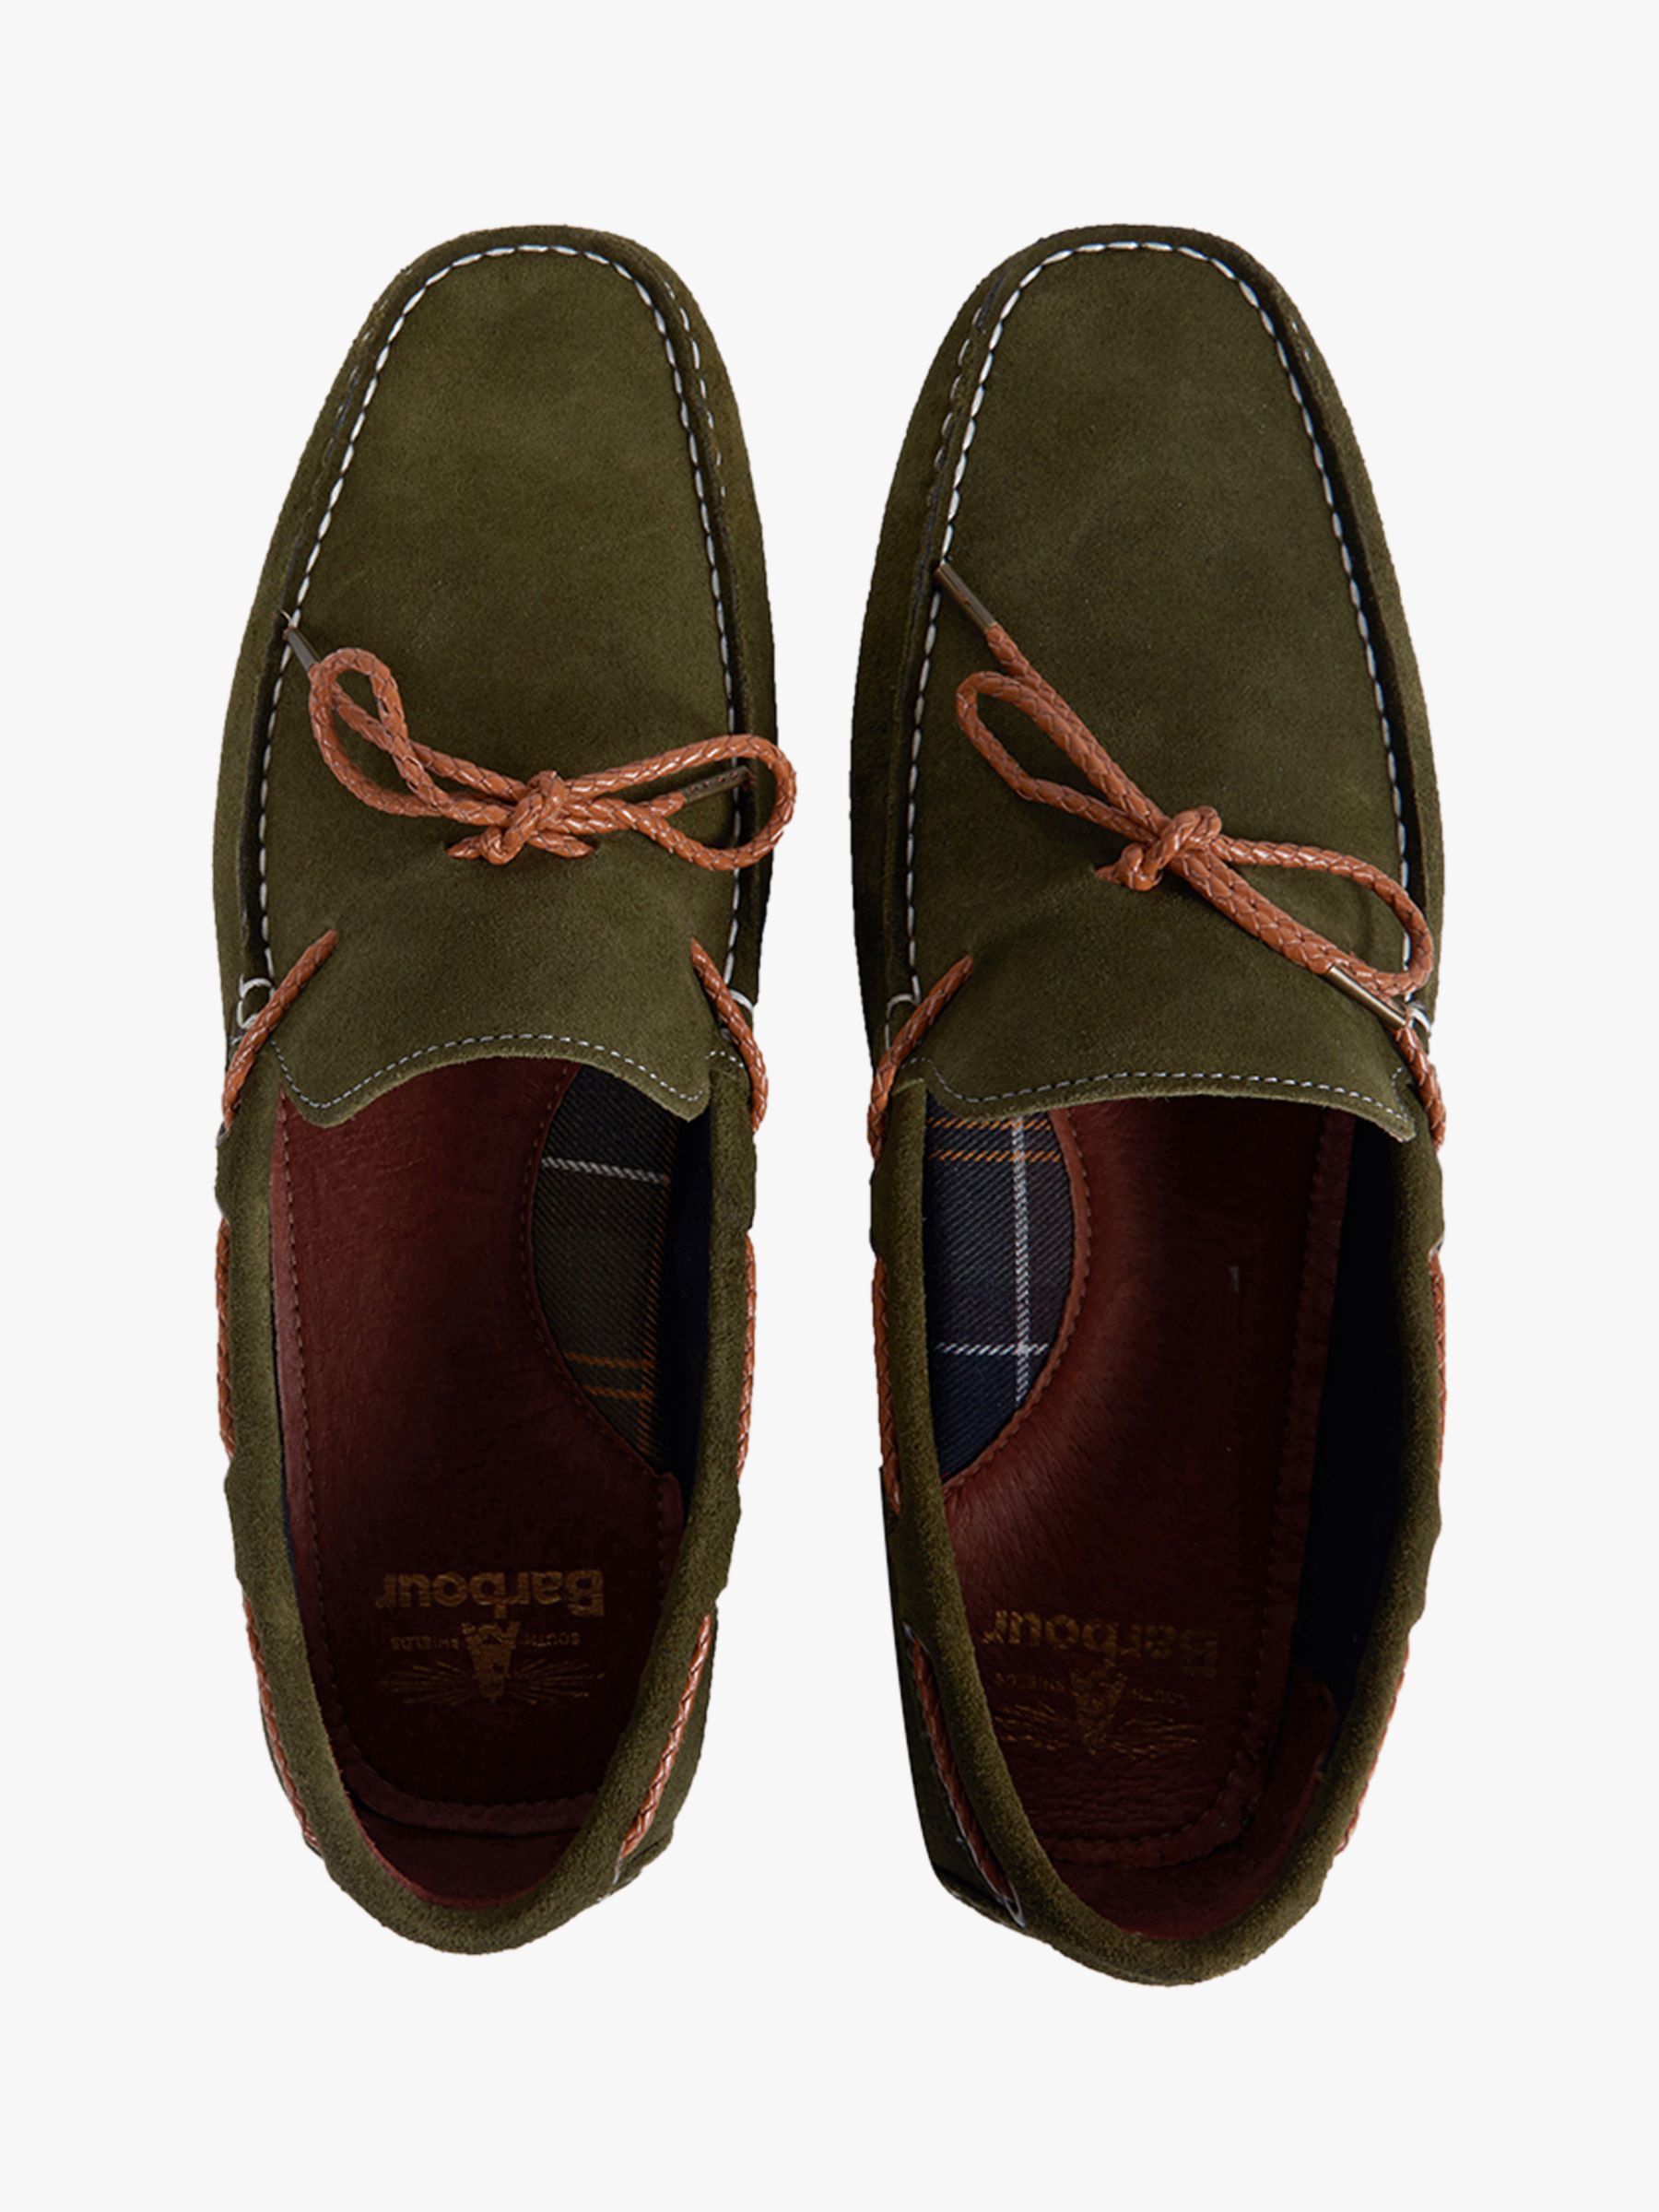 barbour eldon shoes